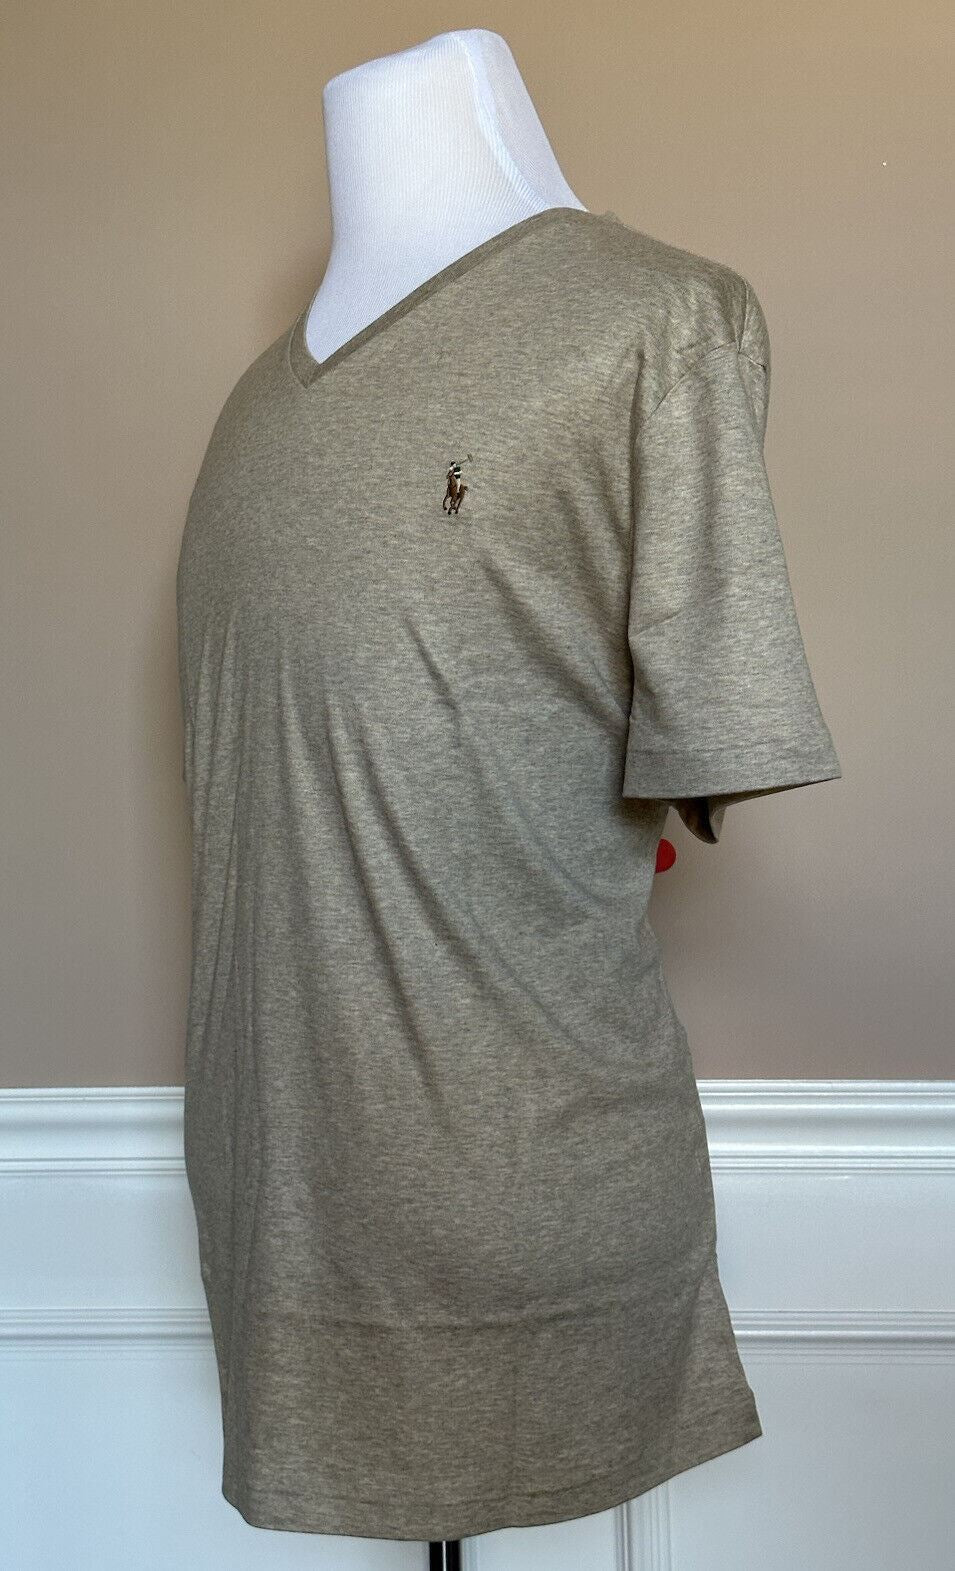 NWT $59.50 Polo Ralph Lauren Short Sleeve V-neck Cotton T-shirt Beige 2XL